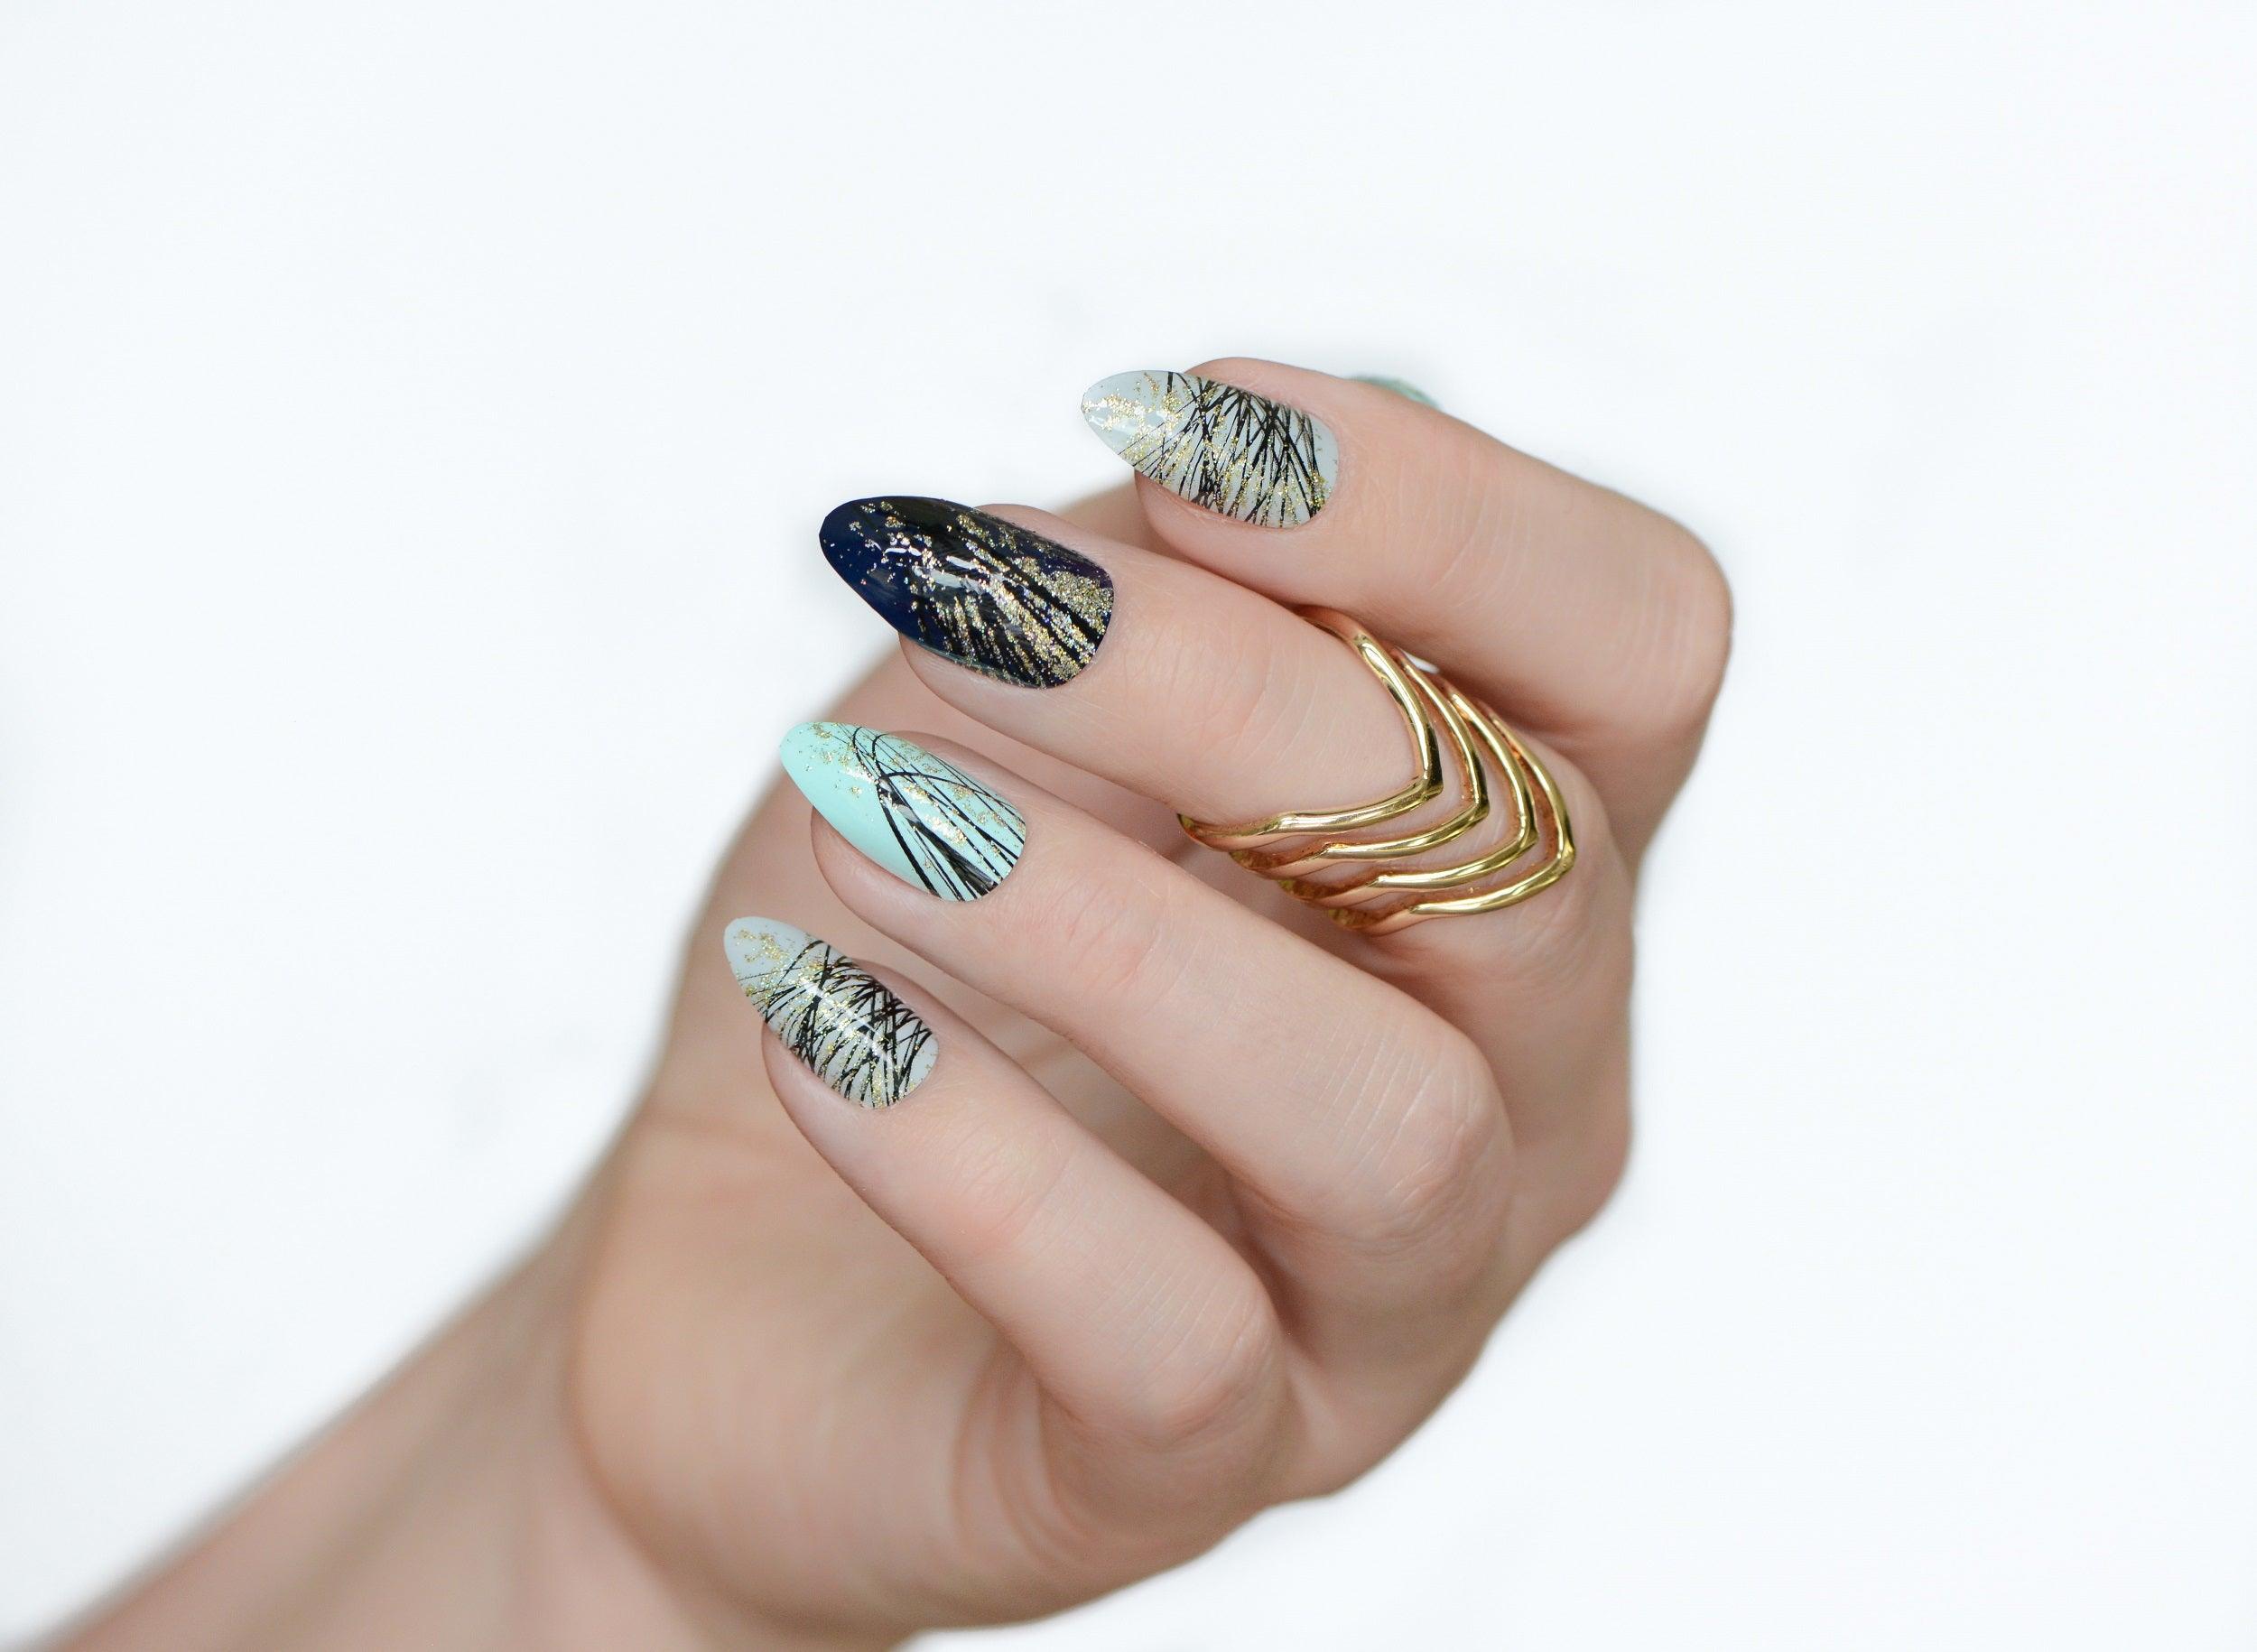 Shop Fake Nails Lv Design online